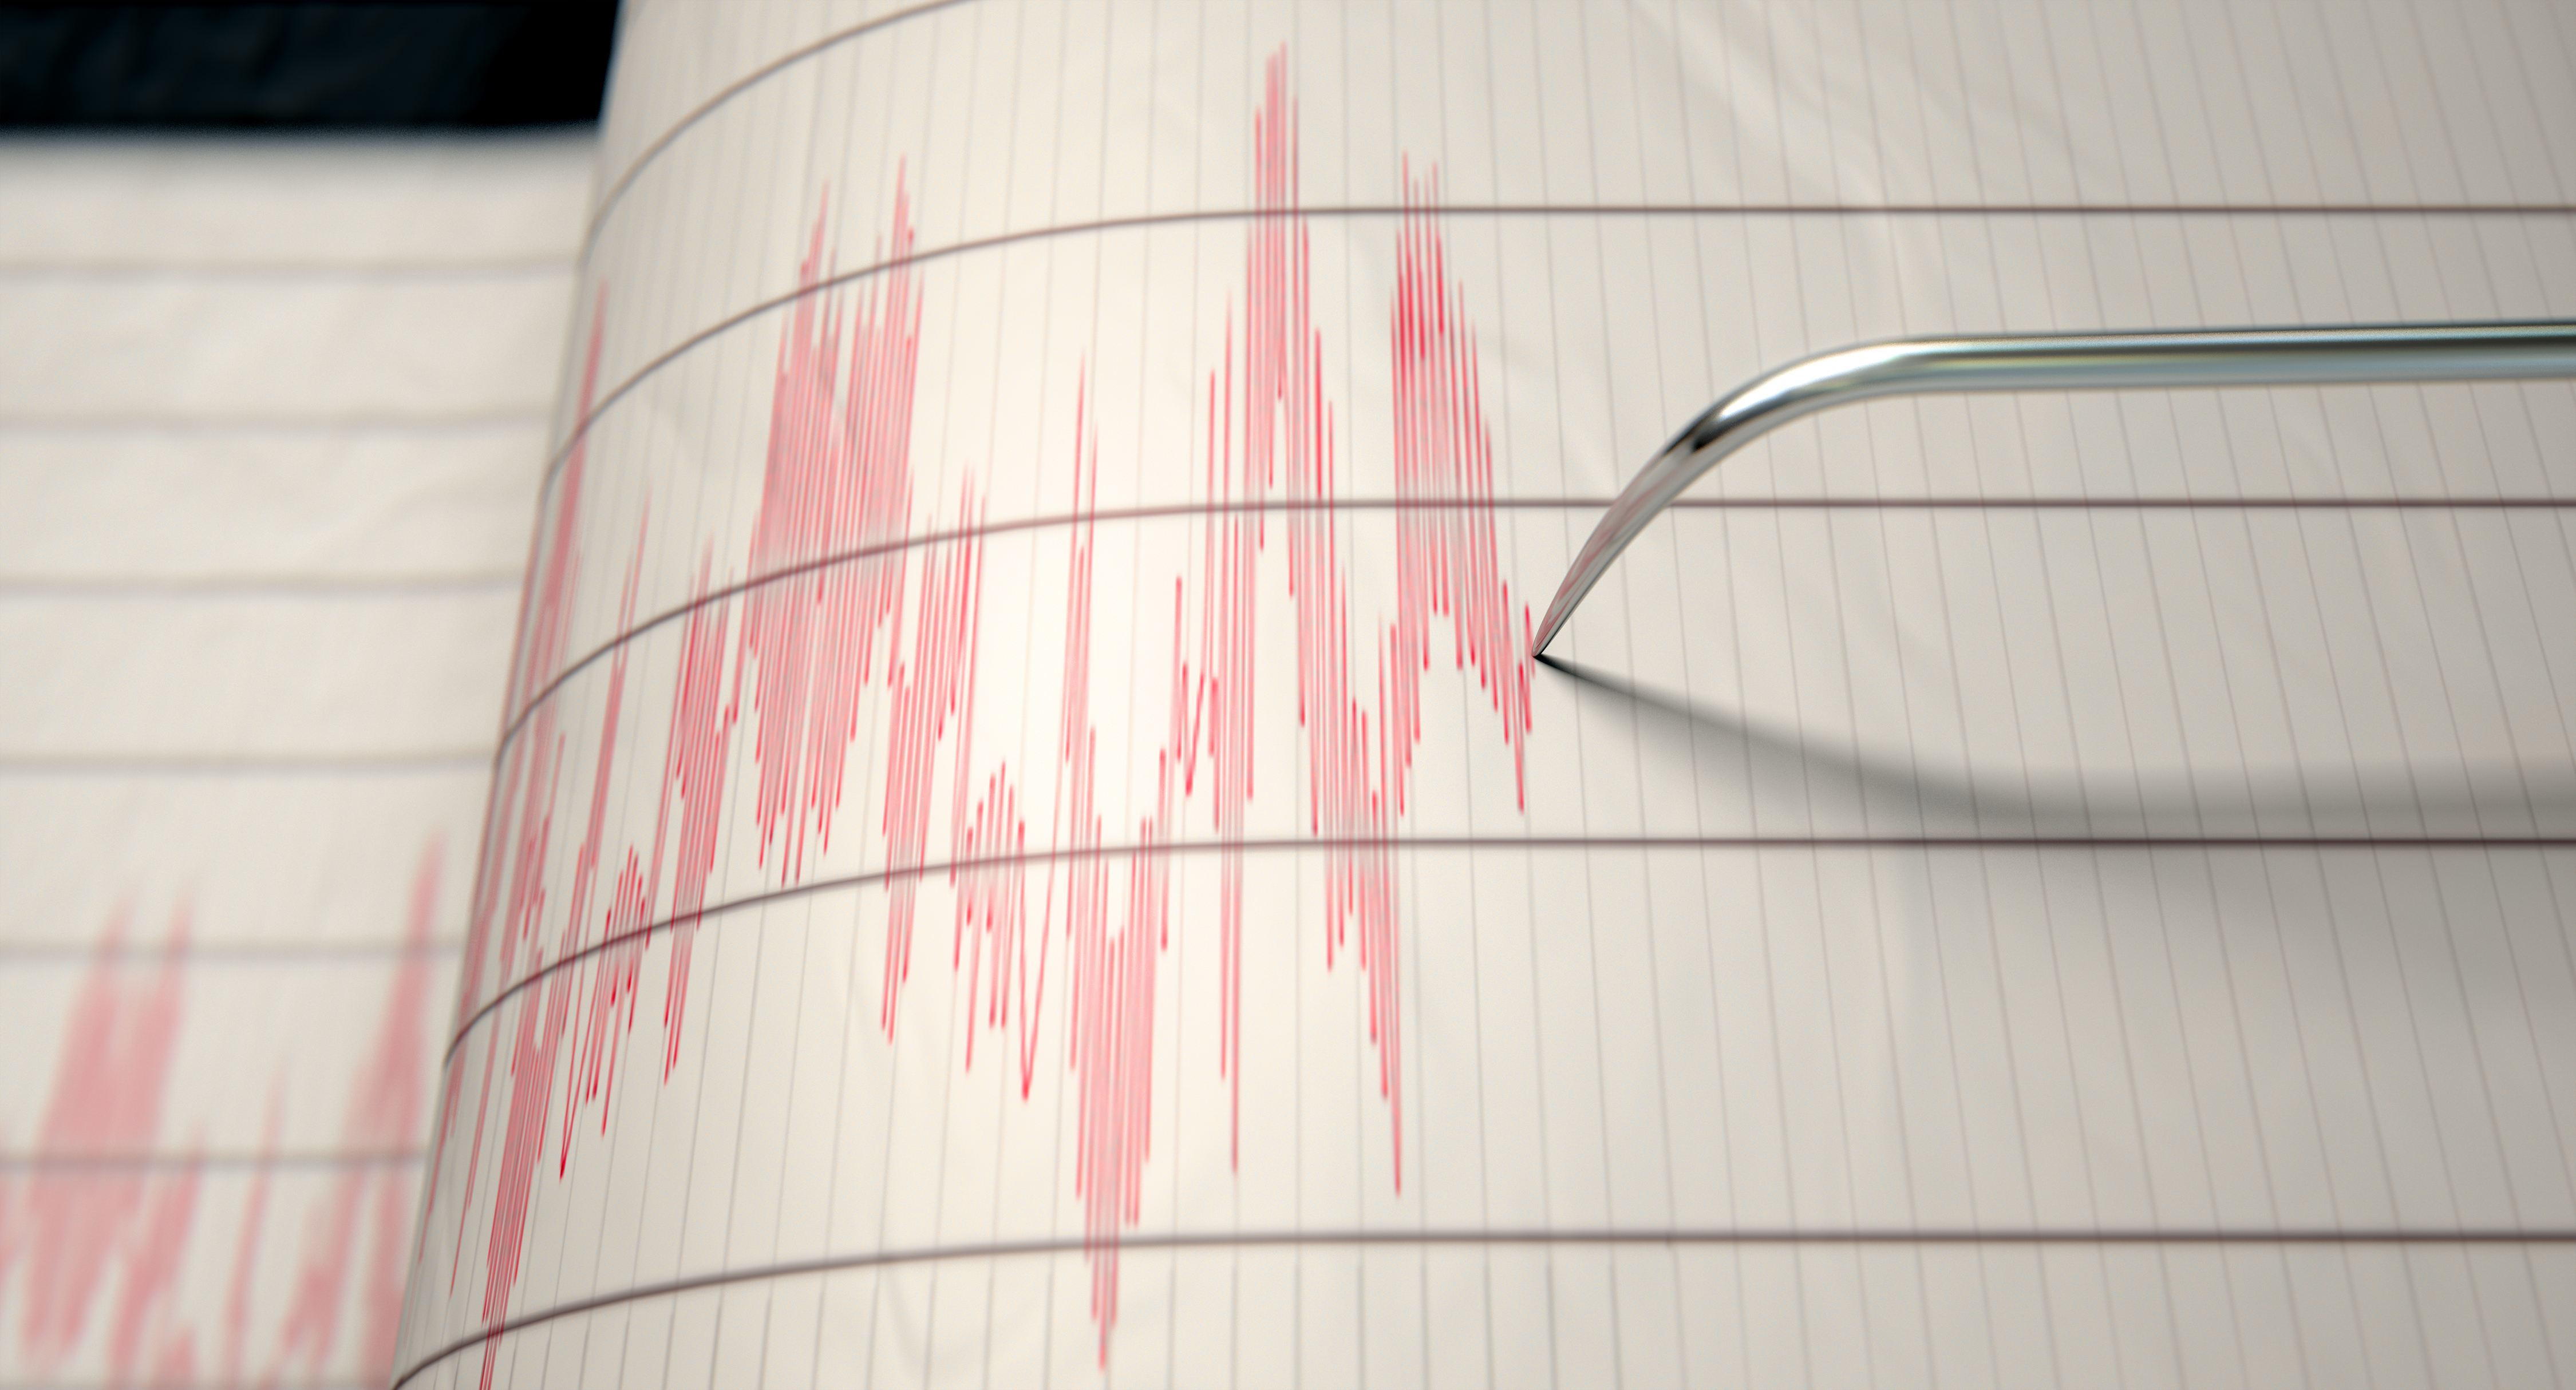 Man describes how 4.1 magnitude earthquake felt in Azusa